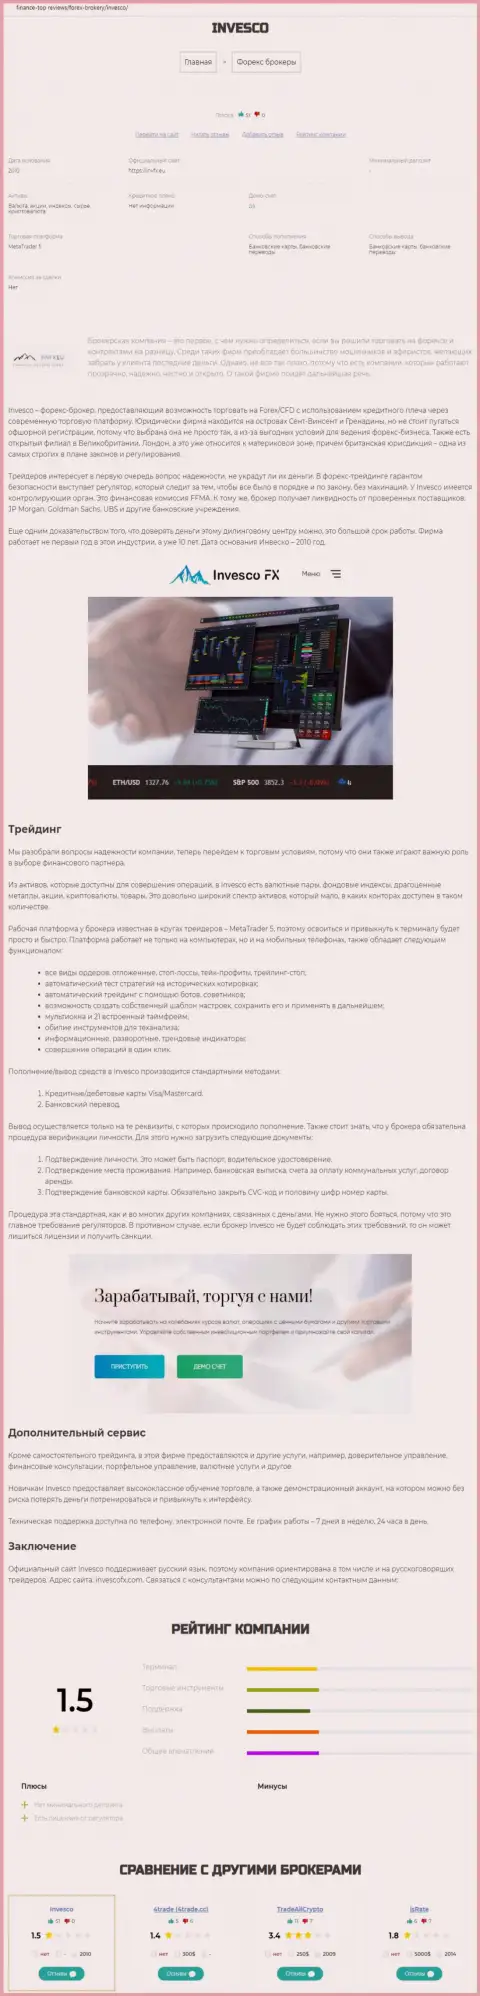 Веб-сайт Finance-Top Reviews проанализировал ФОРЕКС-брокера Инвеско Лтд